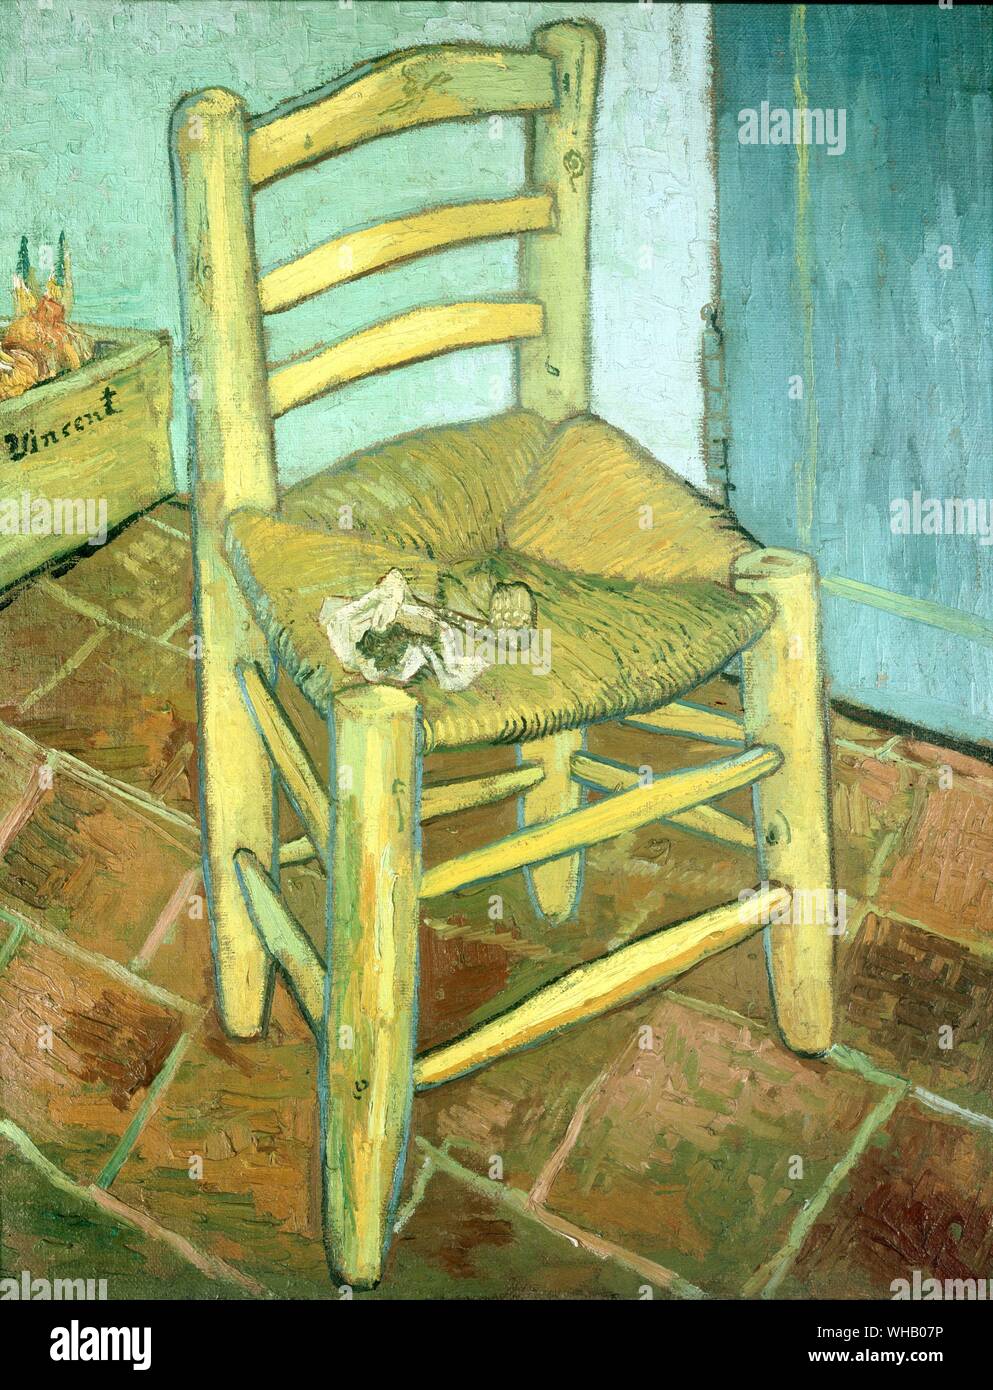 Vincent's silla y su pipa - Arles, diciembre de 1888. Por Van Gogh. Tate Gallery. Las dos pinturas de Vincent de Paul Gauguin y las sillas están entre los más frecuentemente analizados de las obras de Van Gogh. Además del trasfondo simbólico de la obra, estas dos pinturas son también única en términos de la manera en que se muestran juntos--si en las raras exhibiciones en las que han sido reagrupados (Londres, 1968, por ejemplo) o simplemente al lado de un libro. Generalmente, si la silla de Gauguin se muestra a la izquierda, luego las sillas parecen estar enfrentados entre sí--claramente Foto de stock